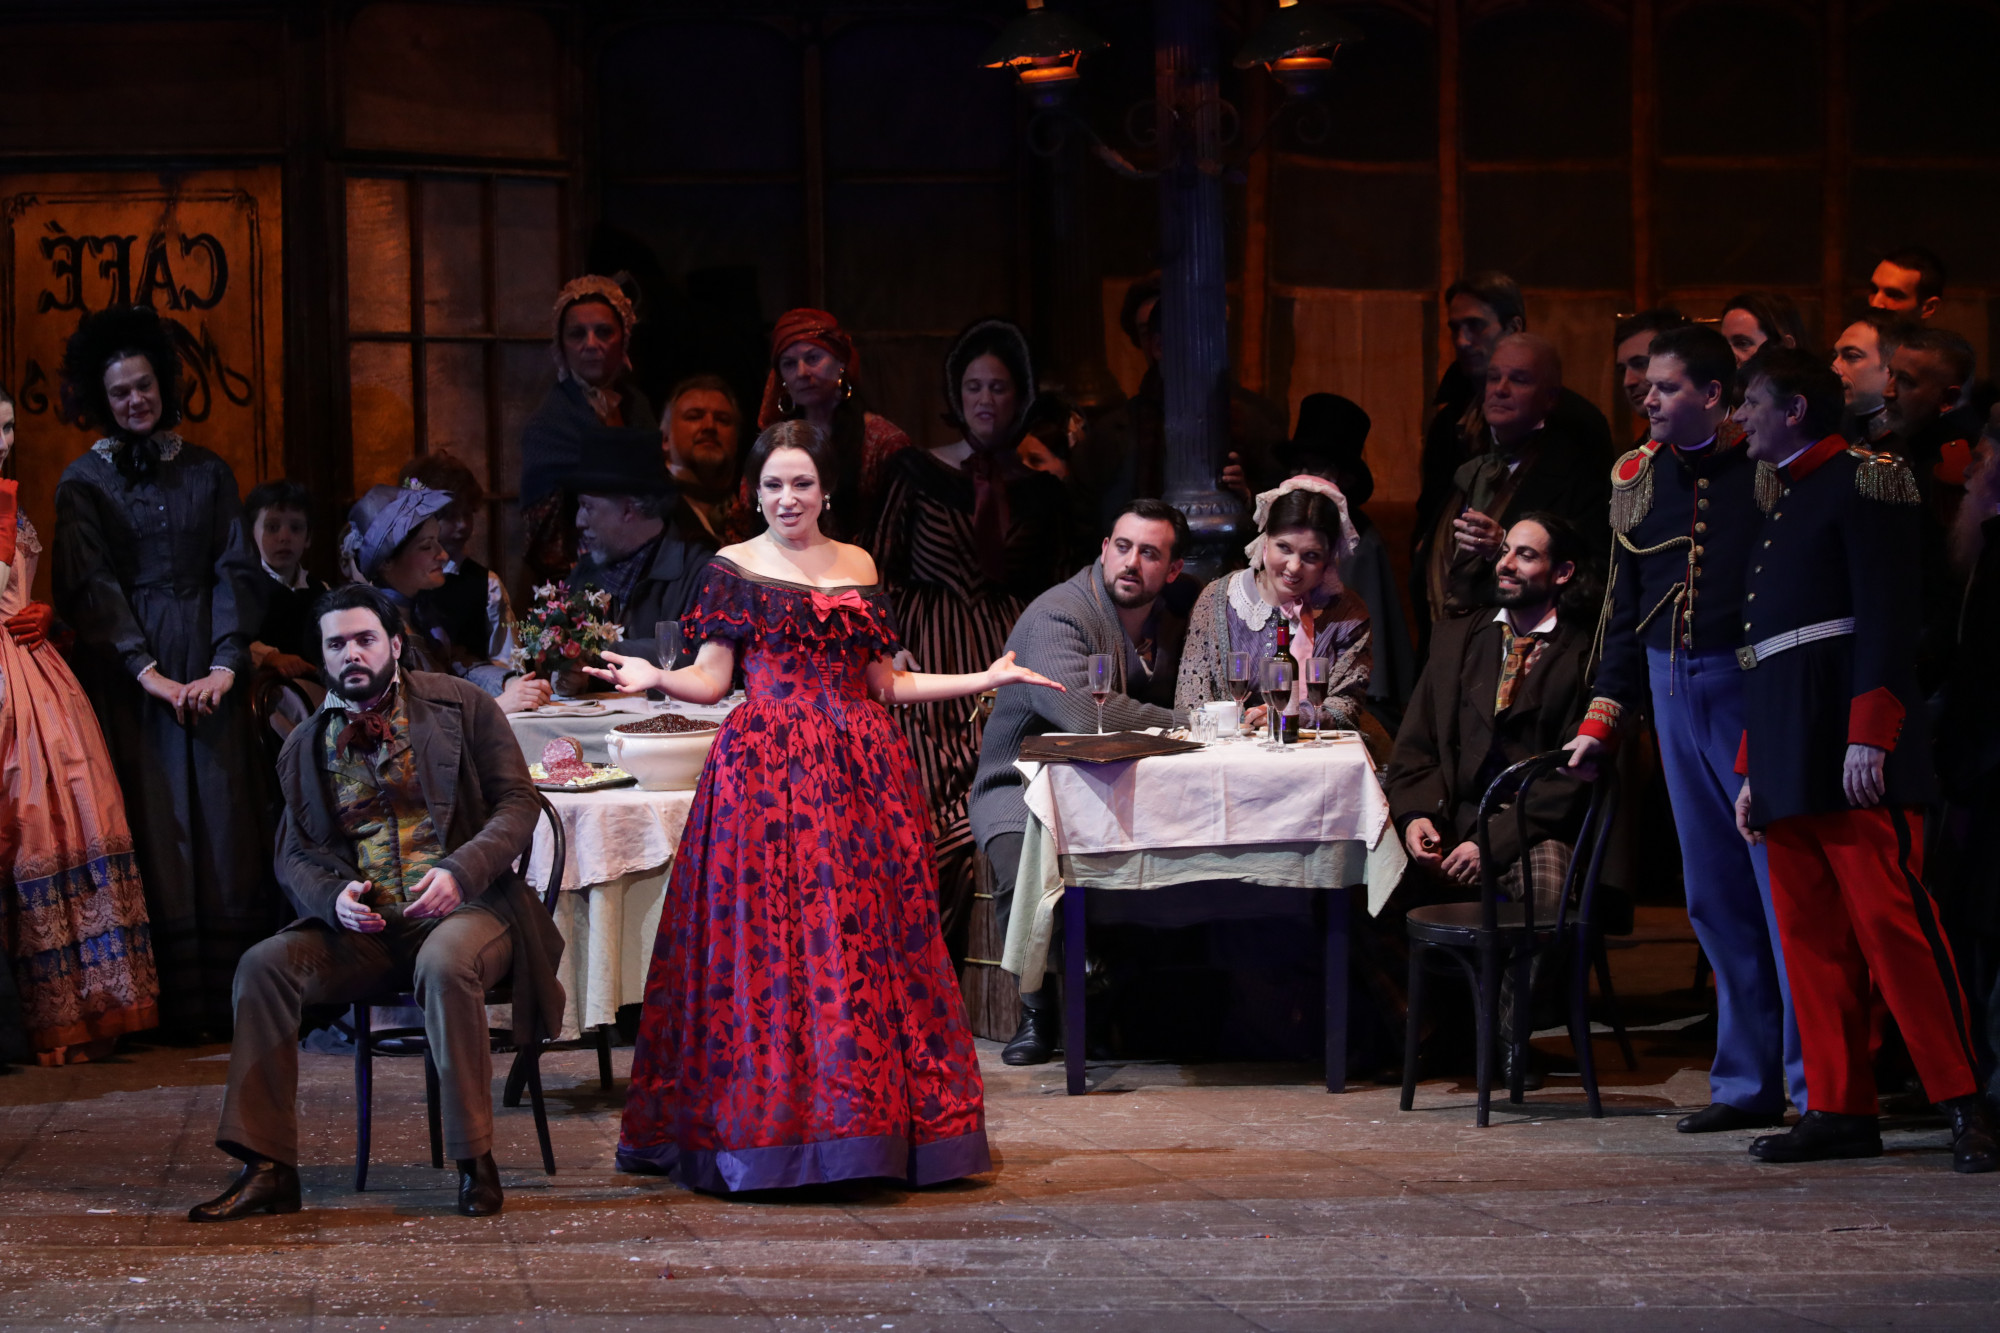 Irina Lungu en una escena de "La bohème" en La Scala de Milán / Foto: © Brescia e Amisano - Teatro alla Scala